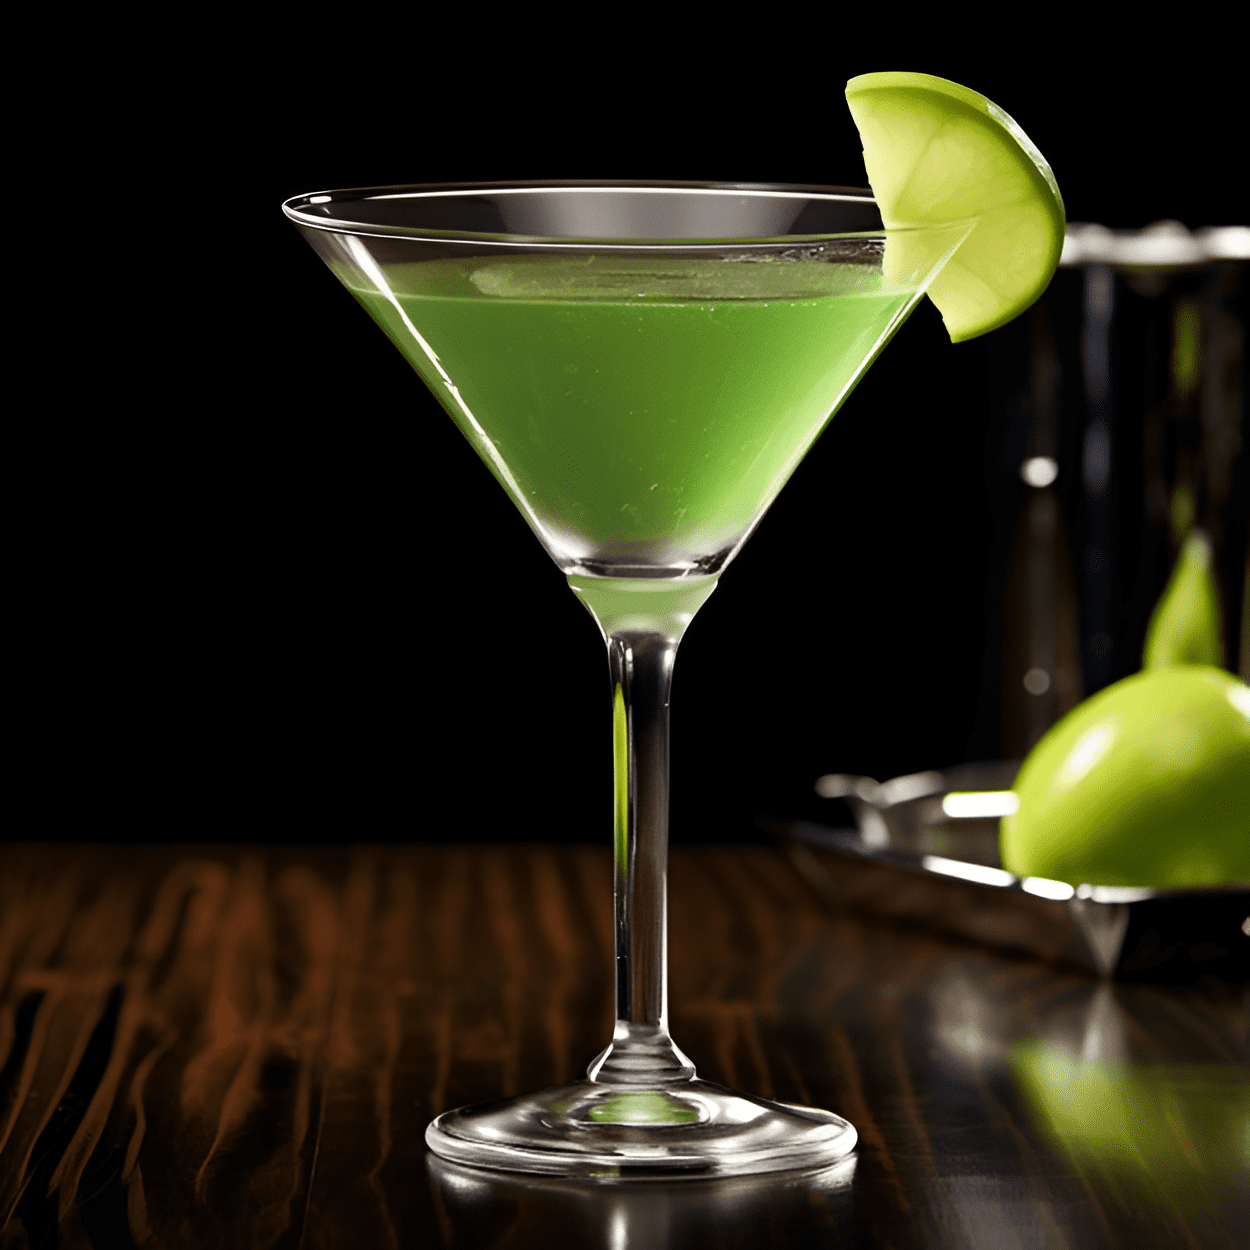 El Apple Martini tiene un sabor dulce y ácido, con un sabor a manzana crujiente y refrescante. Está bien equilibrado, con una ligera acidez de la manzana y un acabado suave y aterciopelado del vodka.